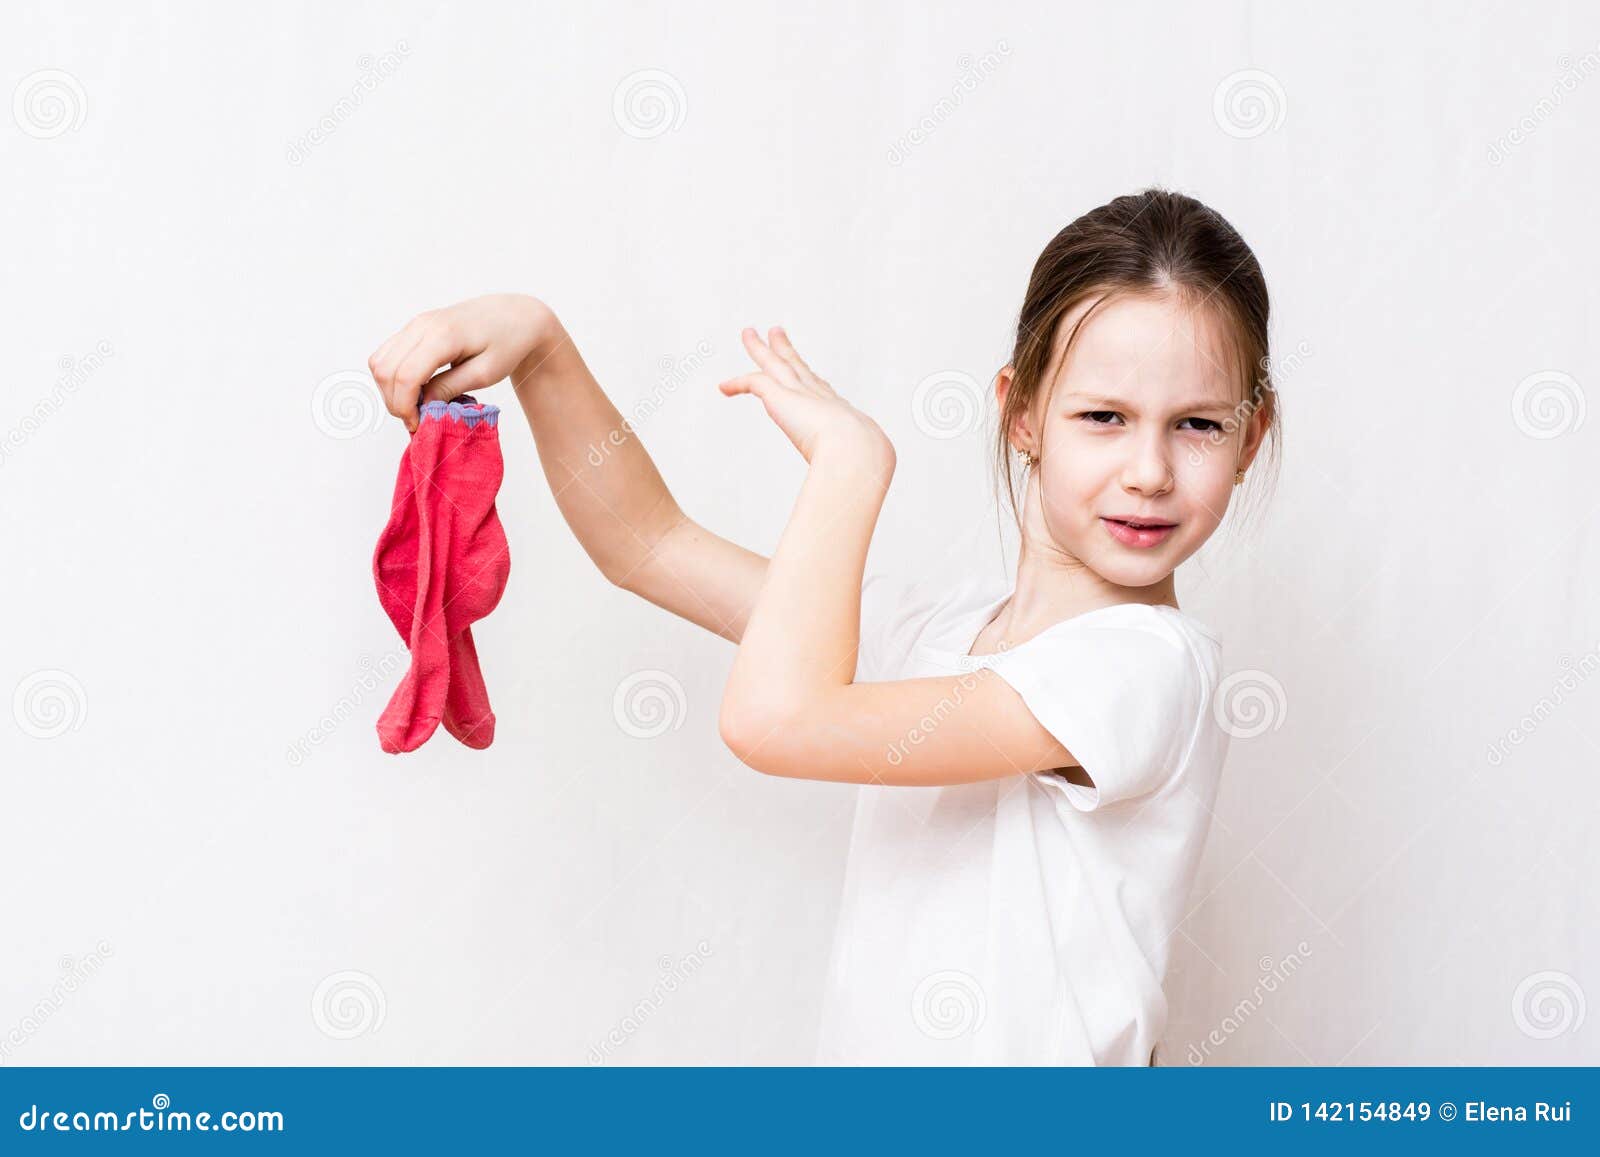 Почему нюхаешь трусы. Вонючие носки девочек. Девочка с трусами в руках. Дети в грязных носках девочки. Девочка надевает носки.